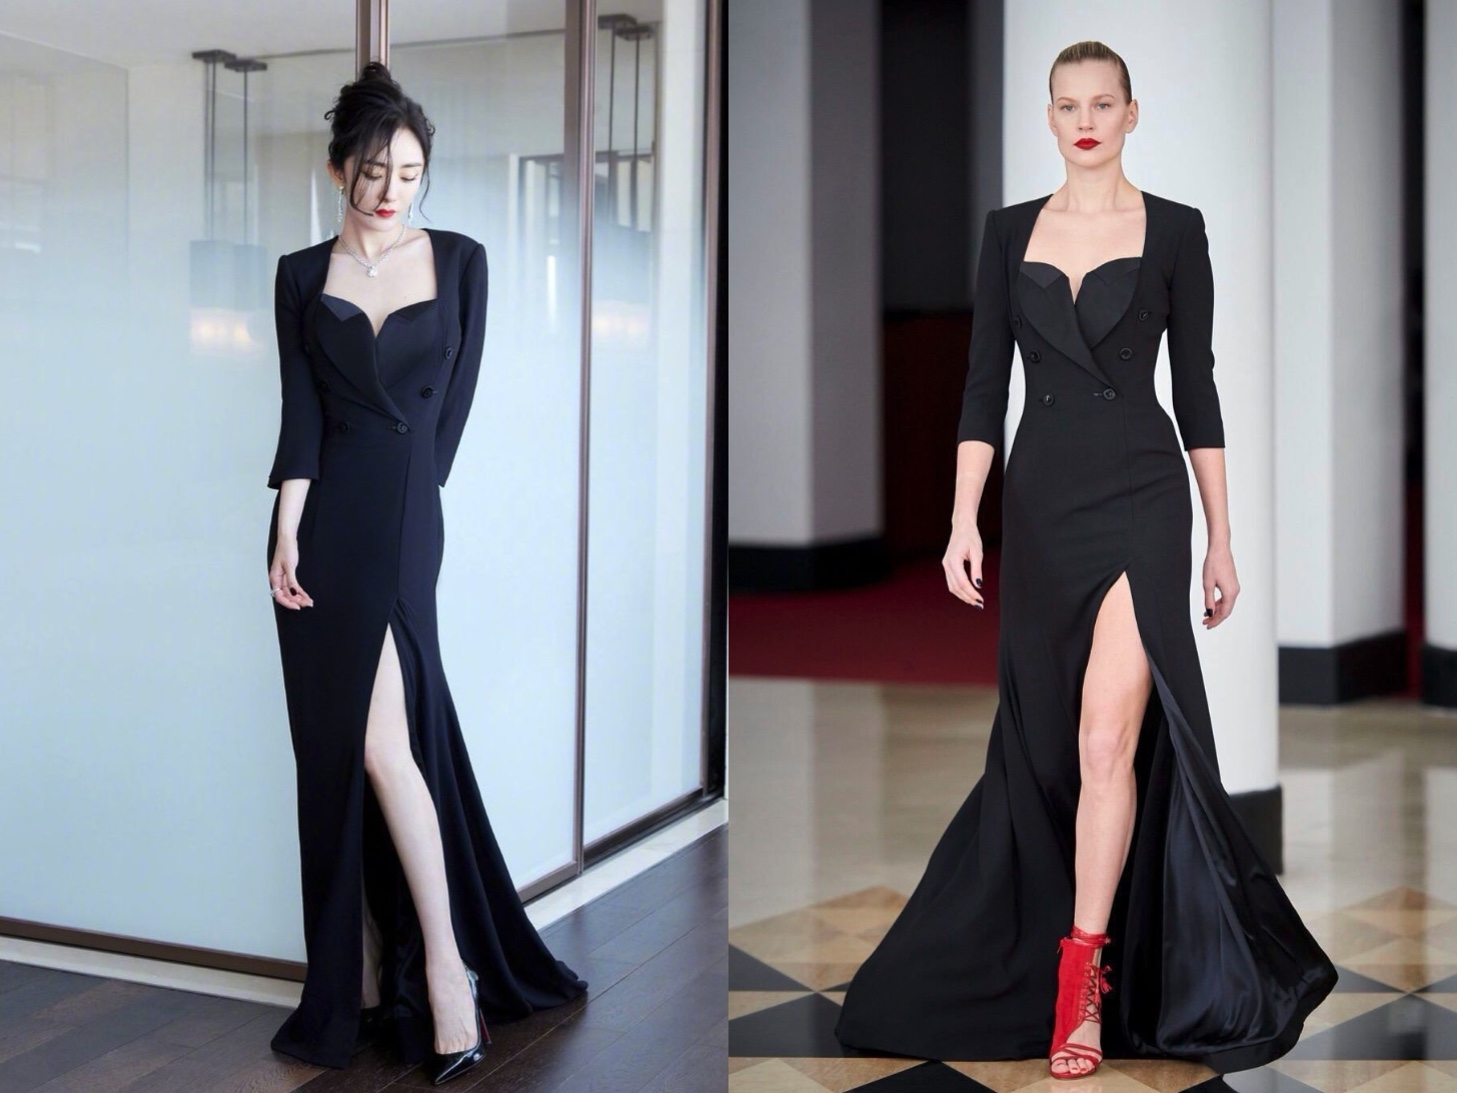 Xuất hiện trong chiếc váy đen tinh tế của NTK Alexis Mabille, Dương Mịch chiếm trọn spotlight trên thảm đỏ sự kiện. Chiếc váy được thiết kế với phần thân trên lịch sự và phần đuôi váy dài xẻ cao là lựa chọn phù hợp đem đến cho cô nàng một phong cách vừa thanh lịch lại vừa quyến rũ.